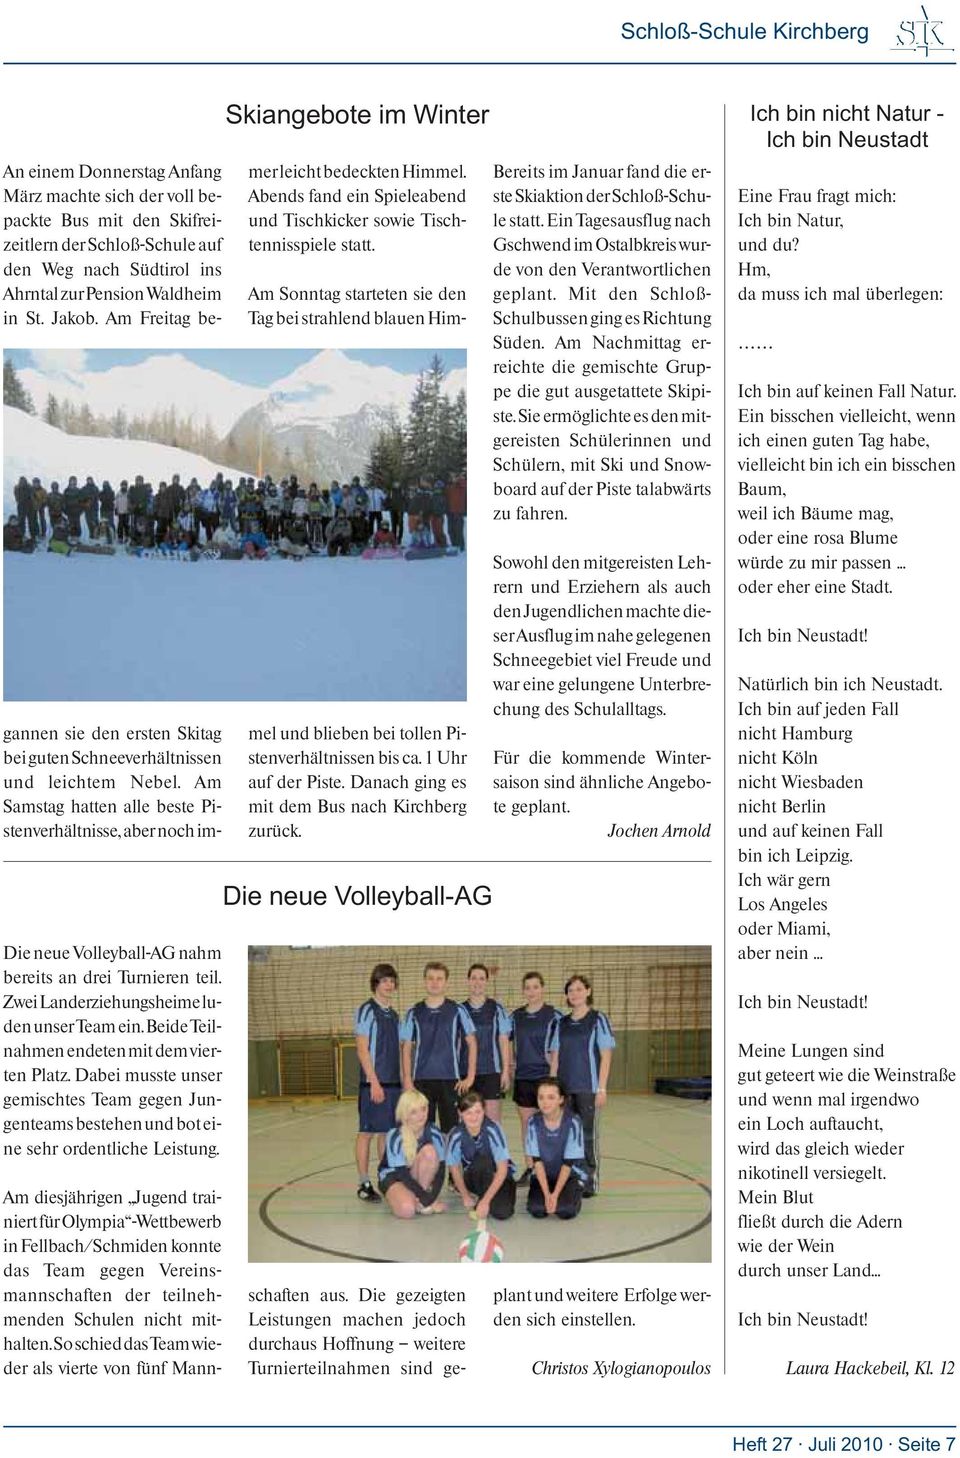 Am diesjährigen Jugend trainiert für Olympia -Wettbewerb in Fellbach/Schmiden konnte das Team gegen Vereinsmannschaften der teilnehmenden Schulen nicht mithalten.